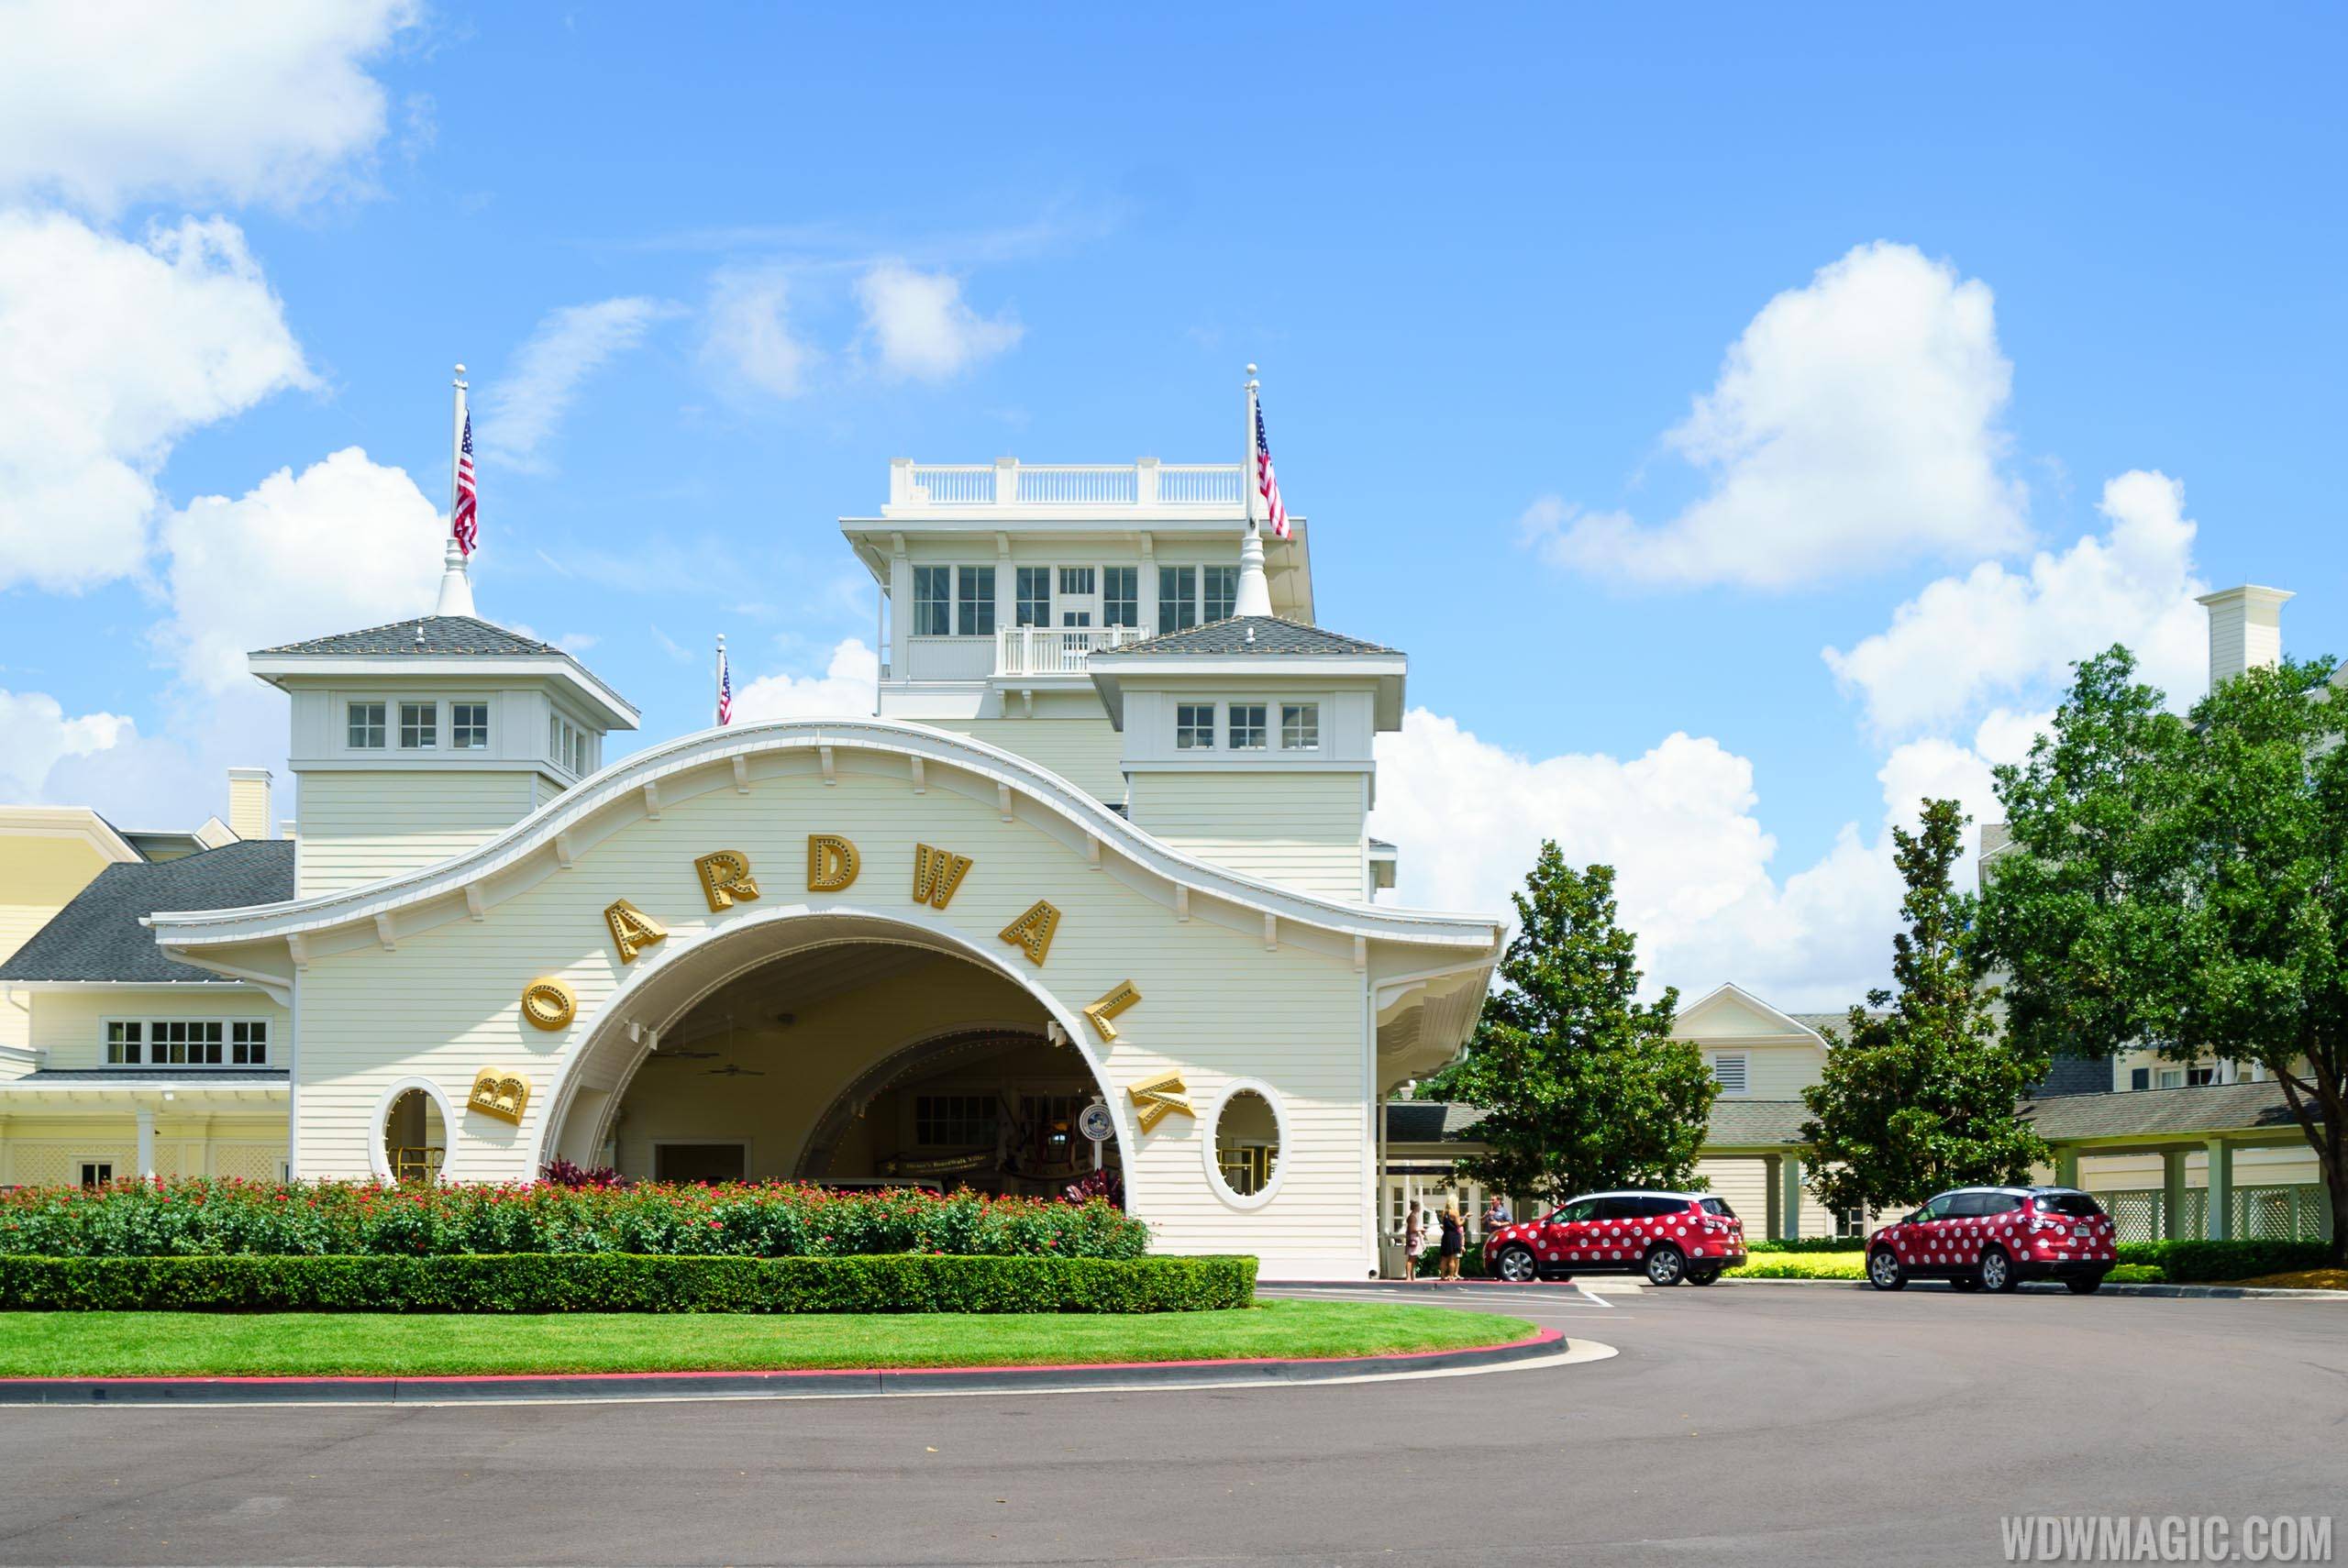 Disney's BoardWalk Inn will reopen in July 2021